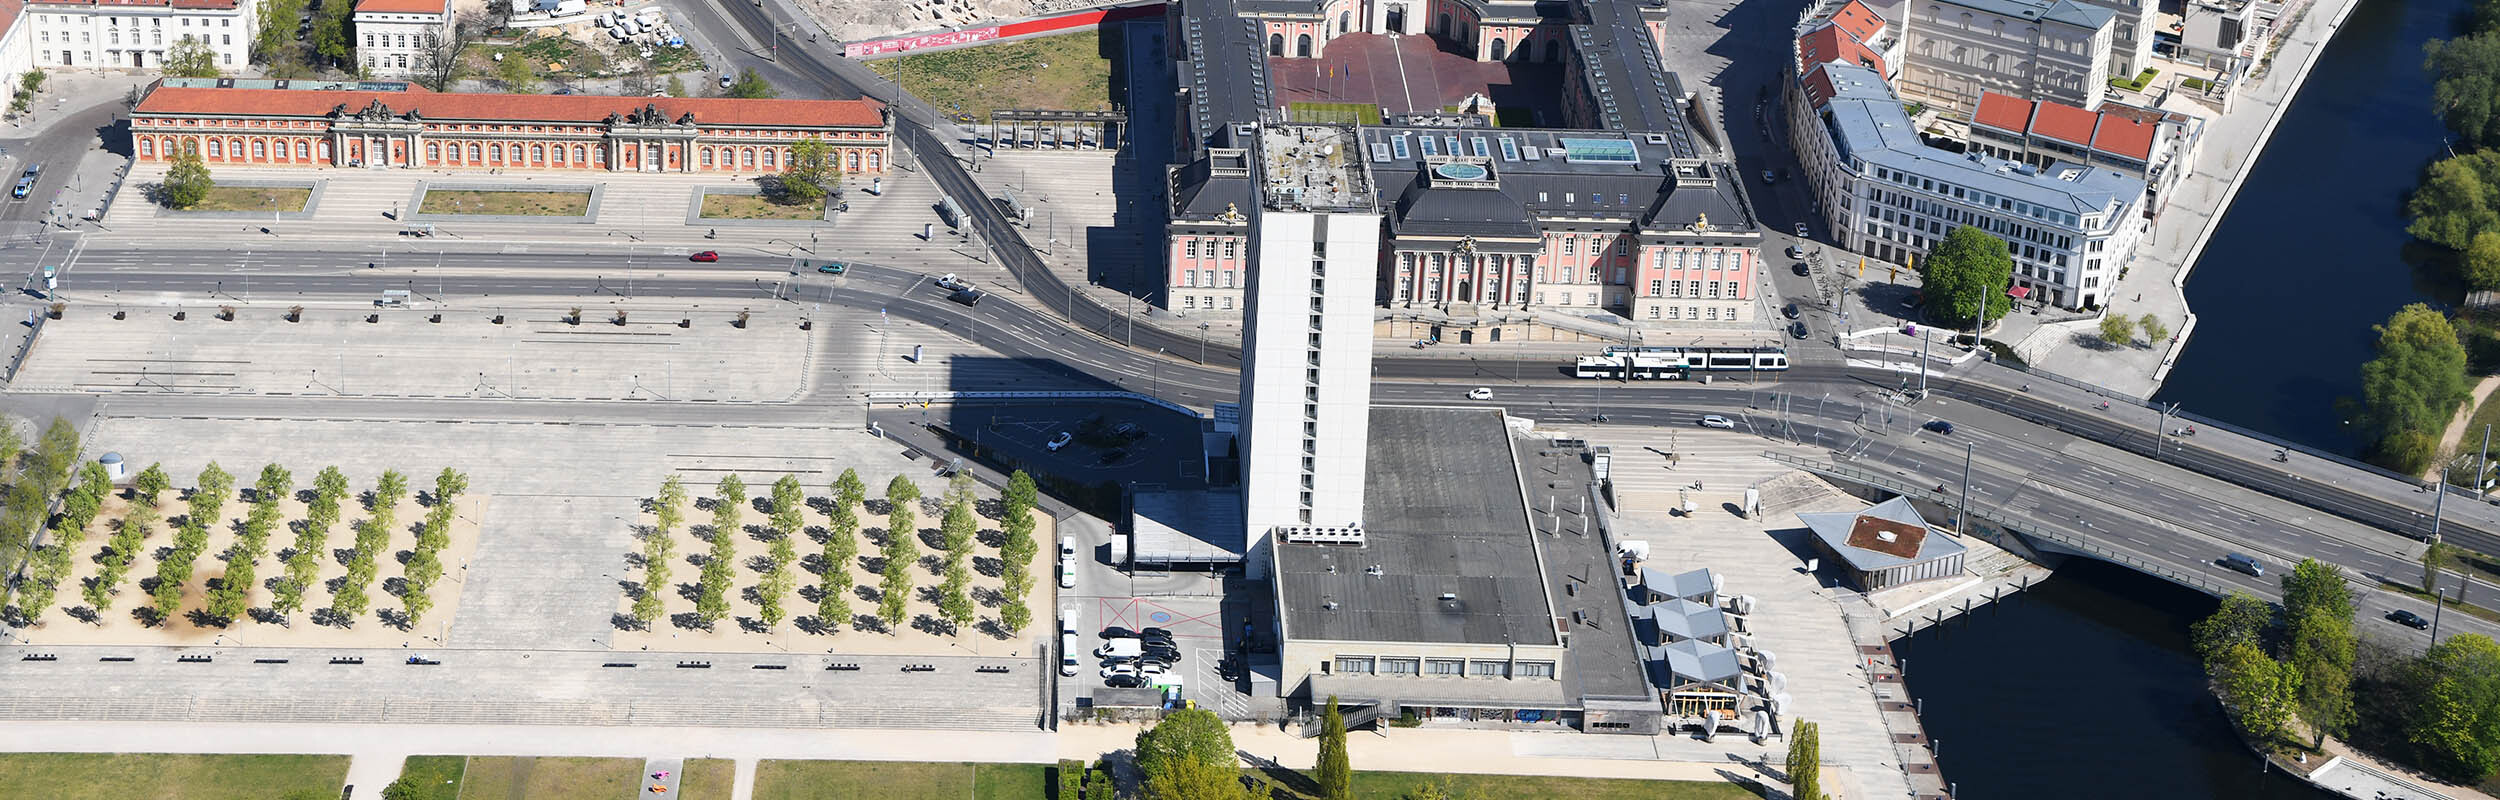 Foto:  Luftbild von der Potsdamer Mitte, im Vordergrund der Lustgarten mit Mercure Hotel und der Langen Brücke, im Hintergrund das Filmmuseum und der Landtag.